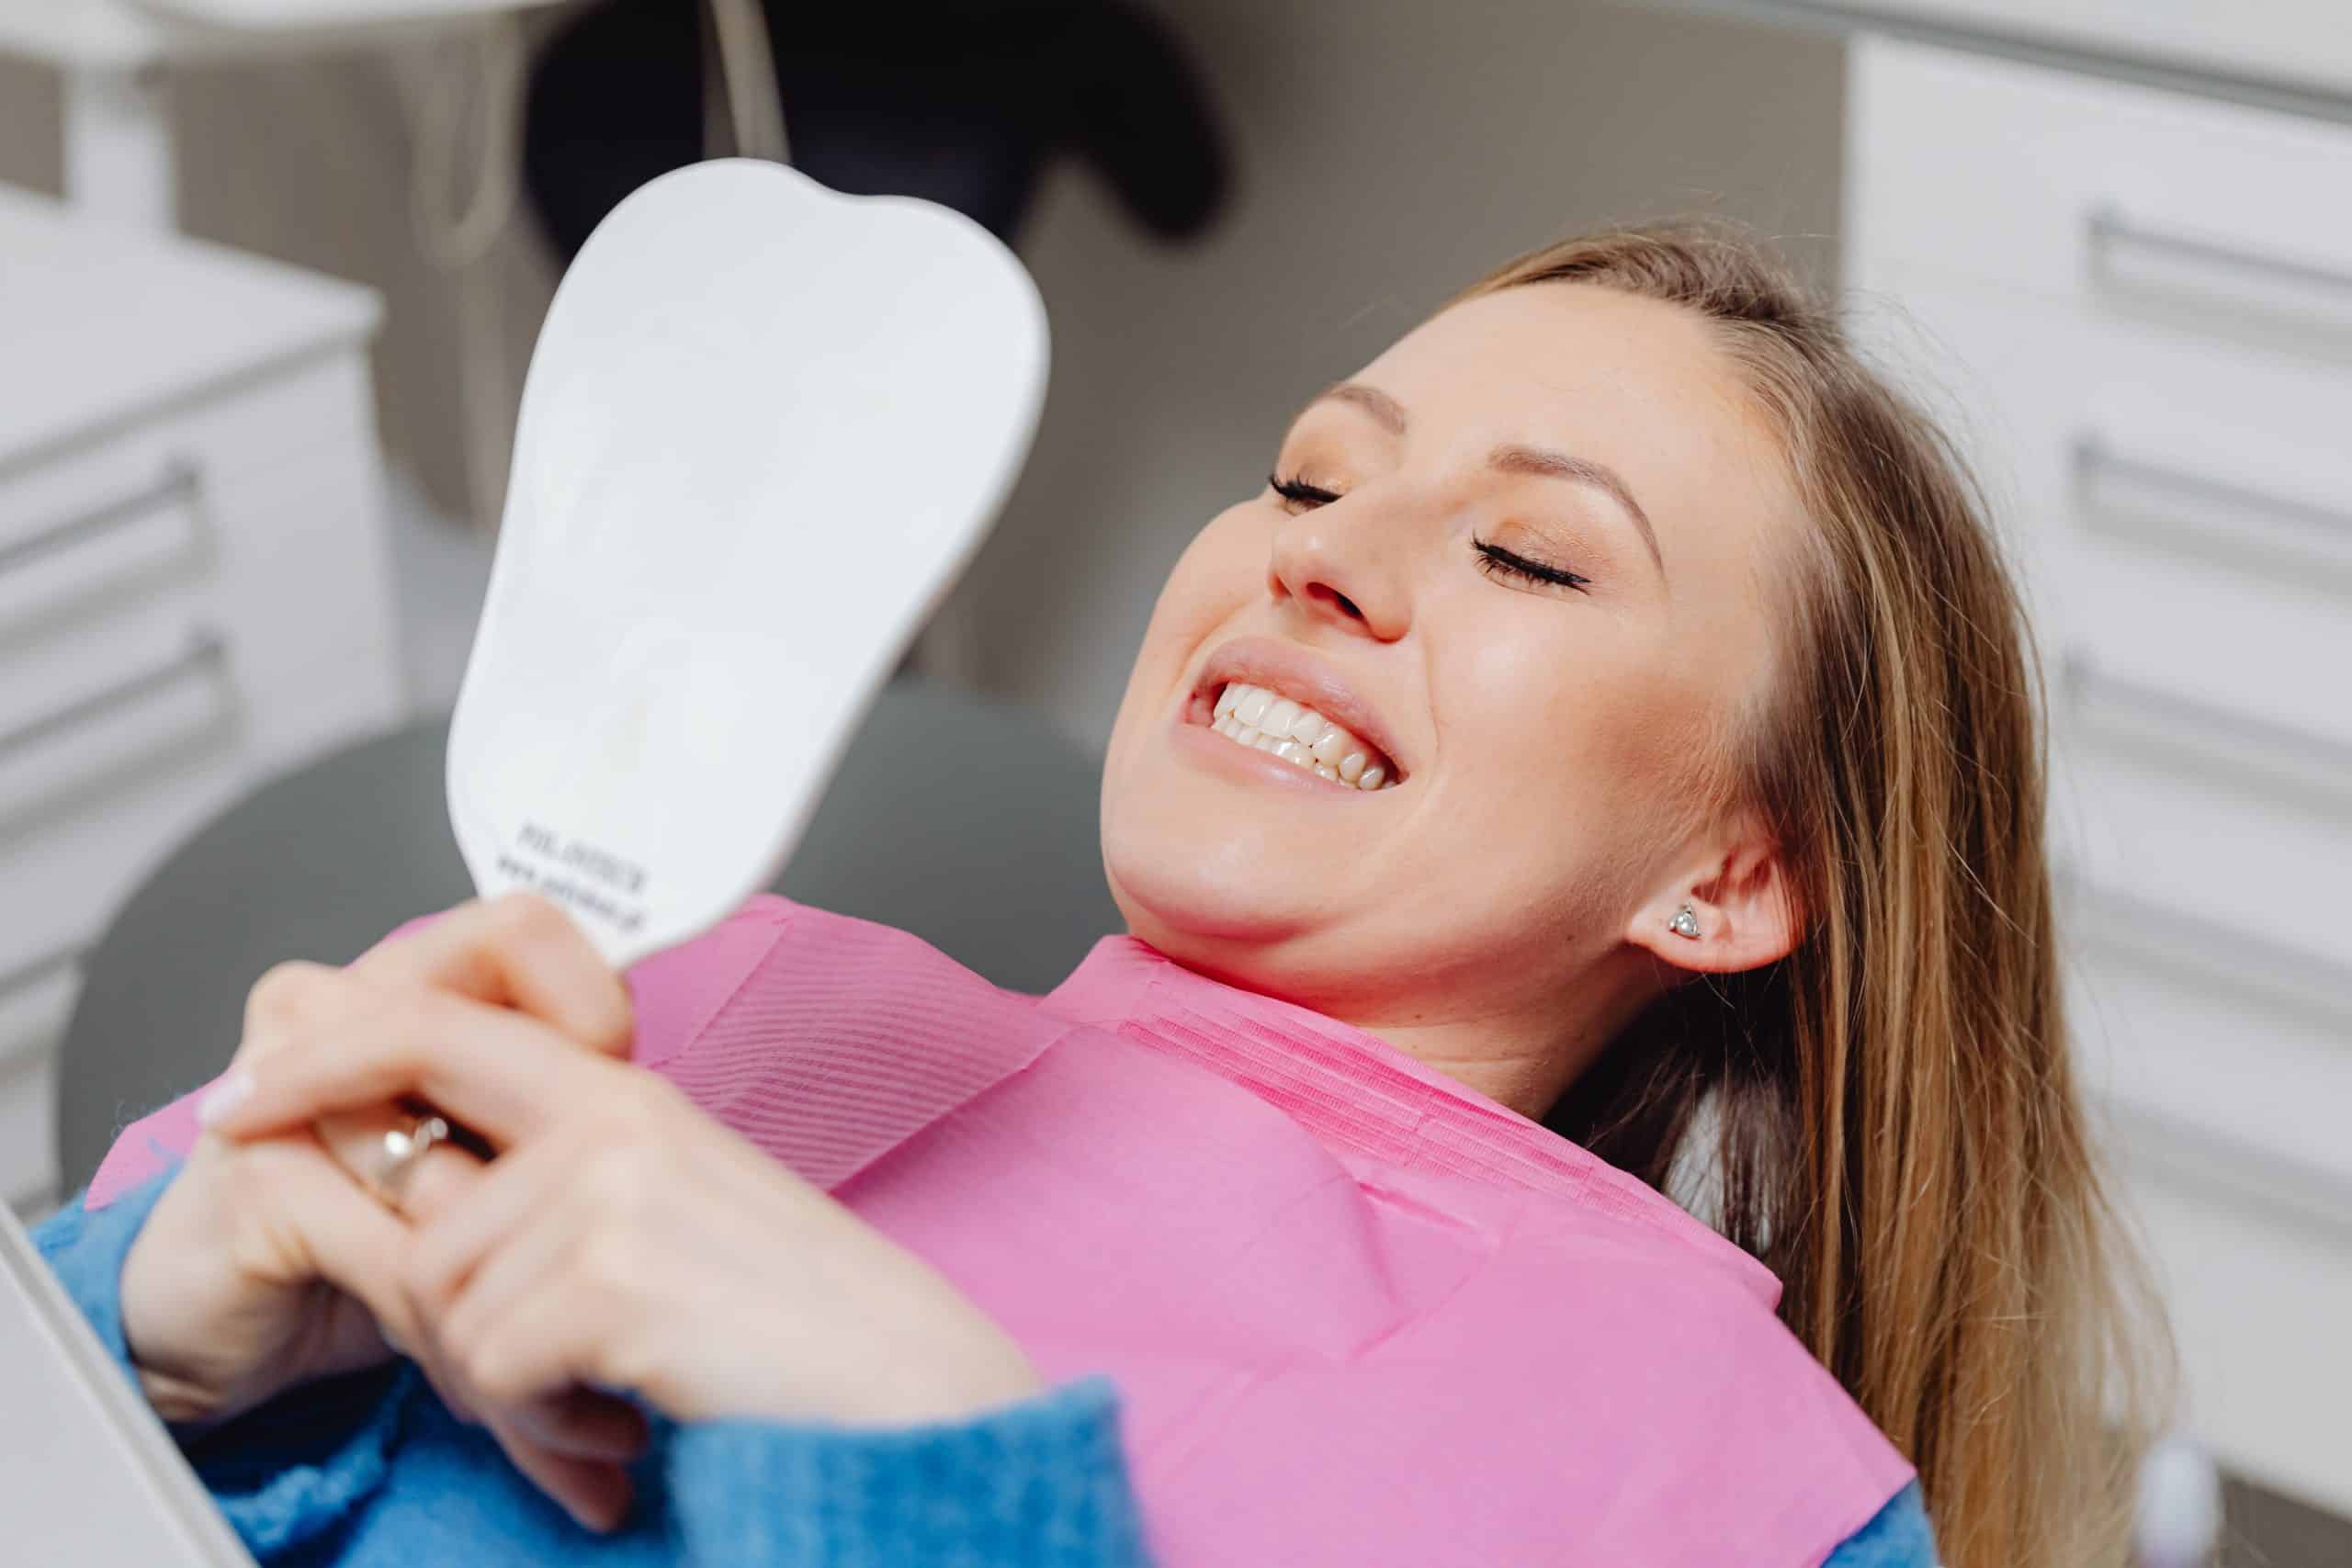 Tannlege og dentist: Hva er forskjellen?